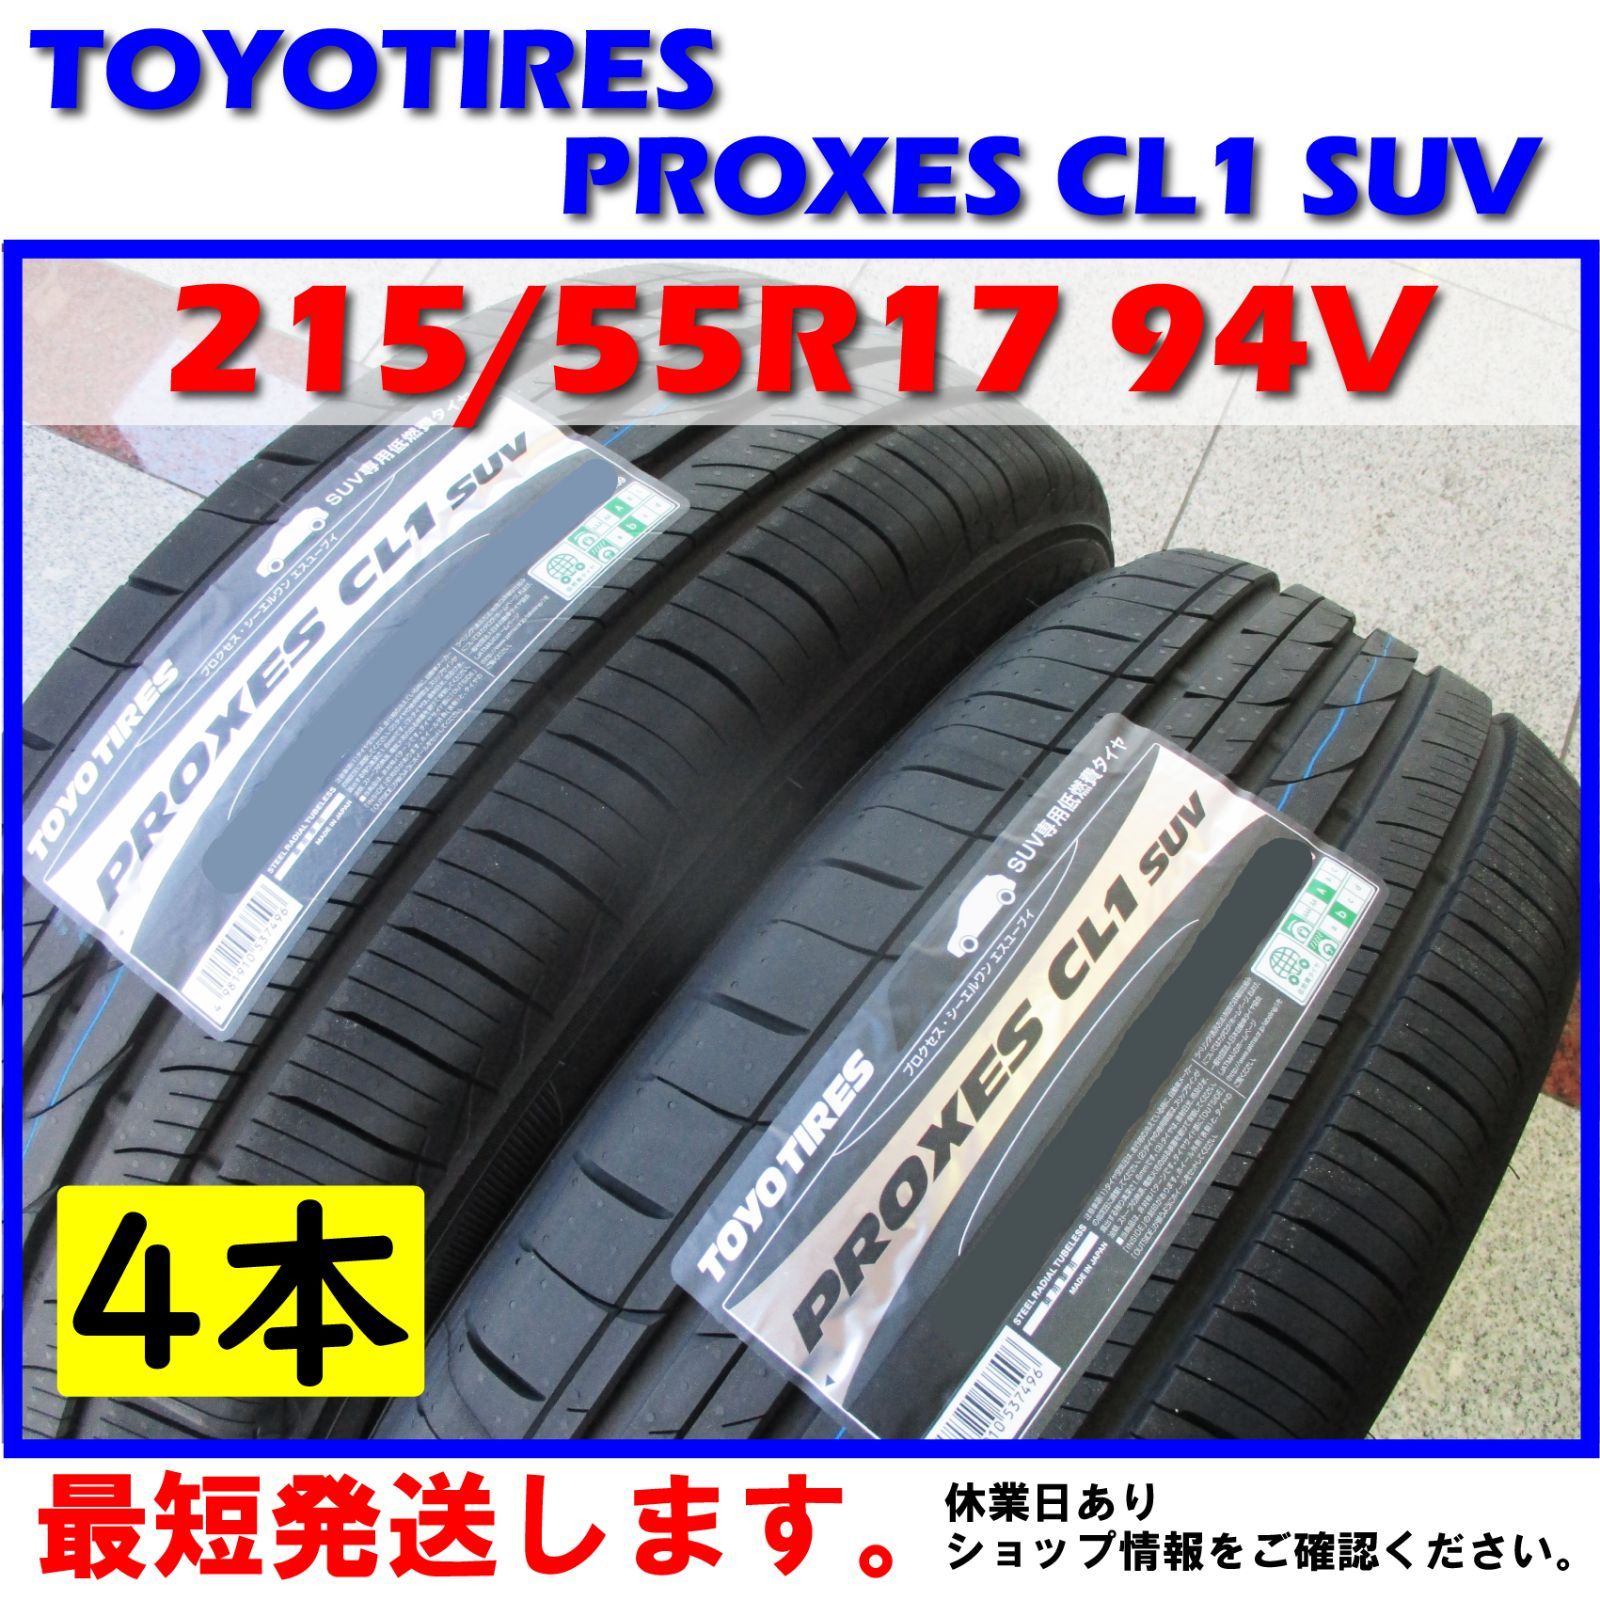 トーヨータイヤ PROXES CL1 SUV 215 55R17 94V サマータイヤ 4本セット - 2